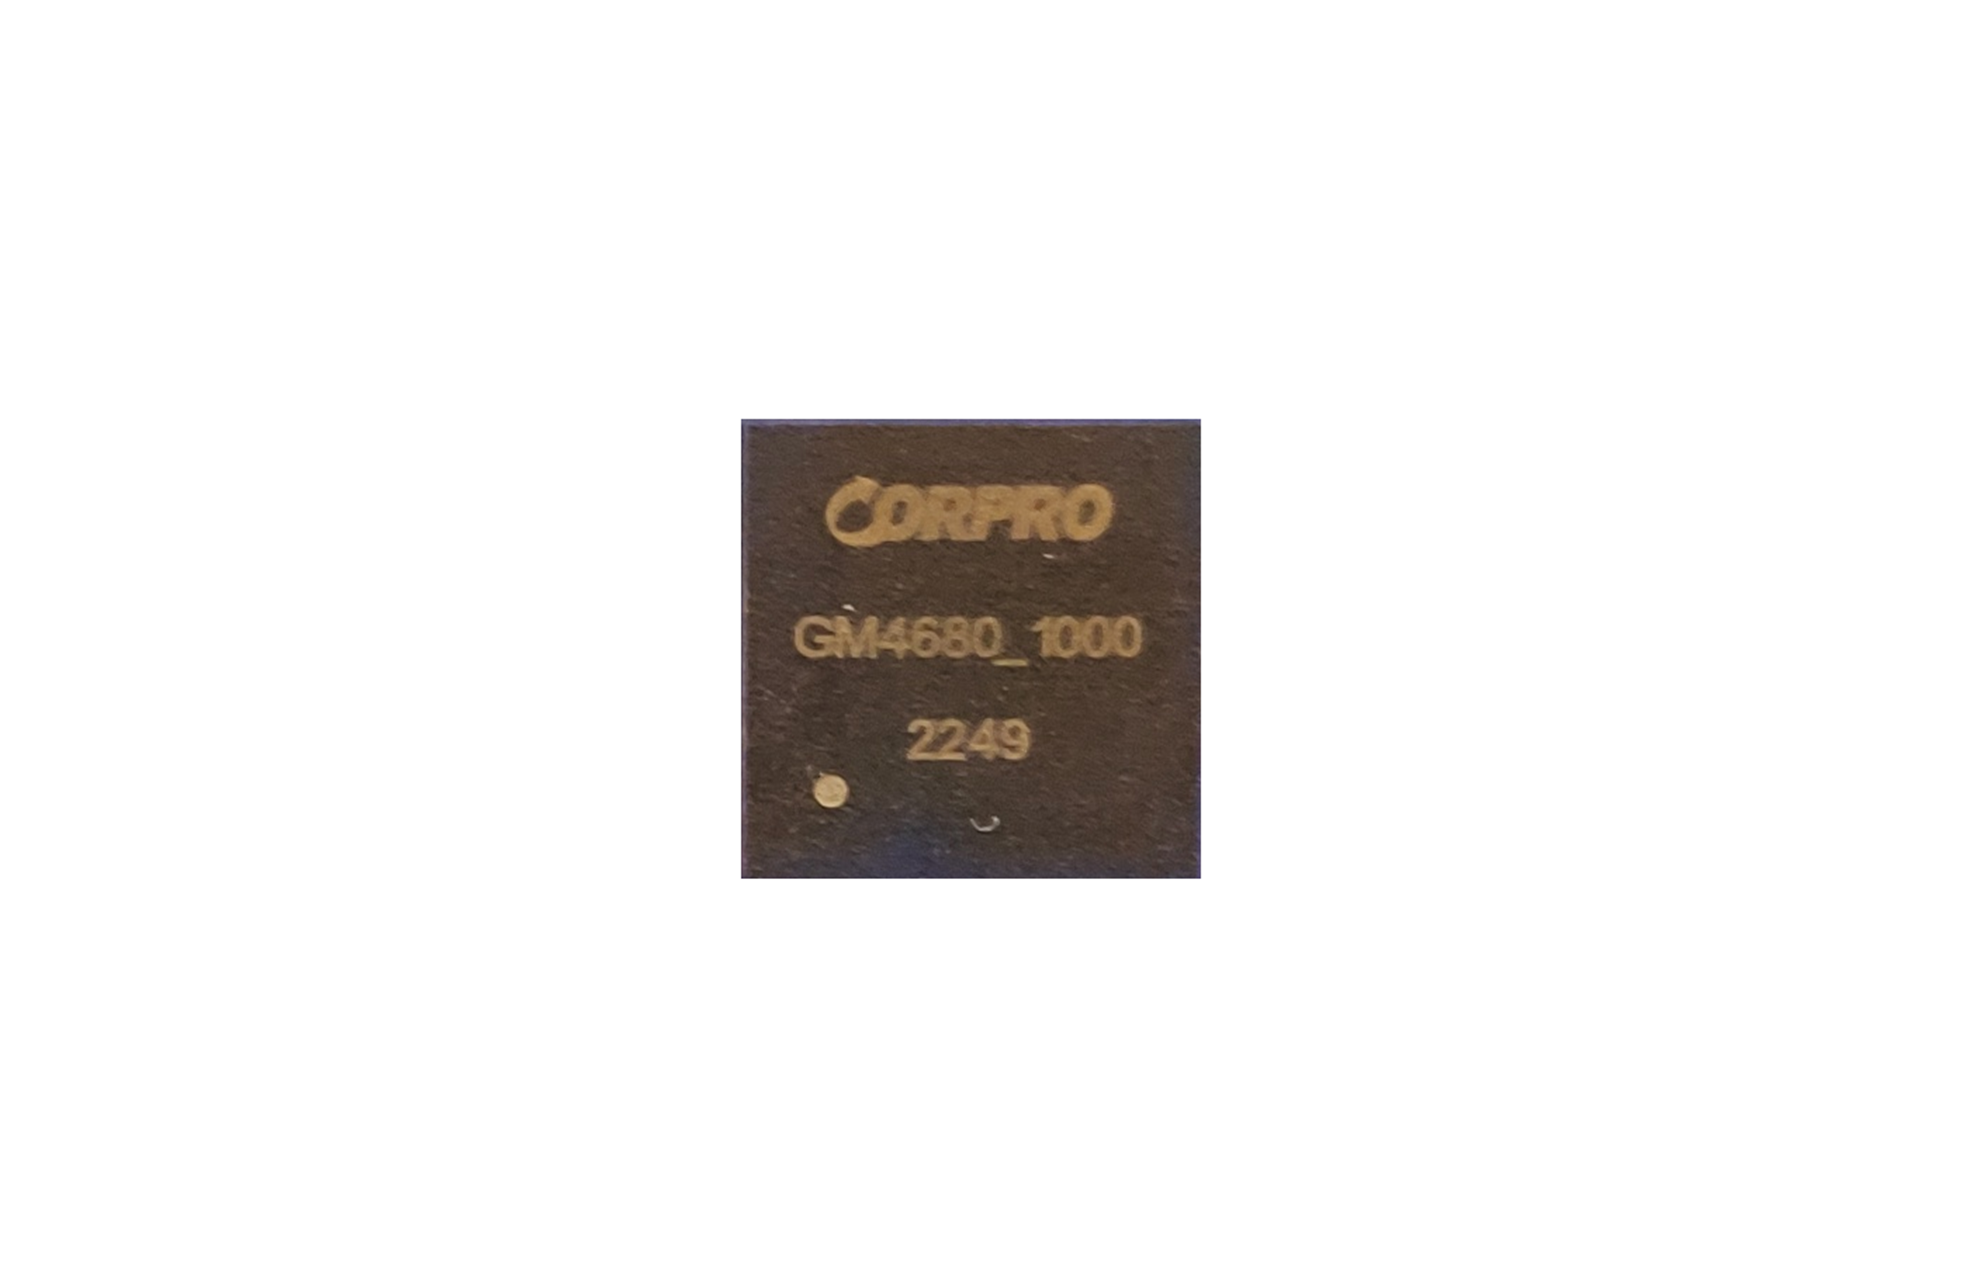 GM4680-1000